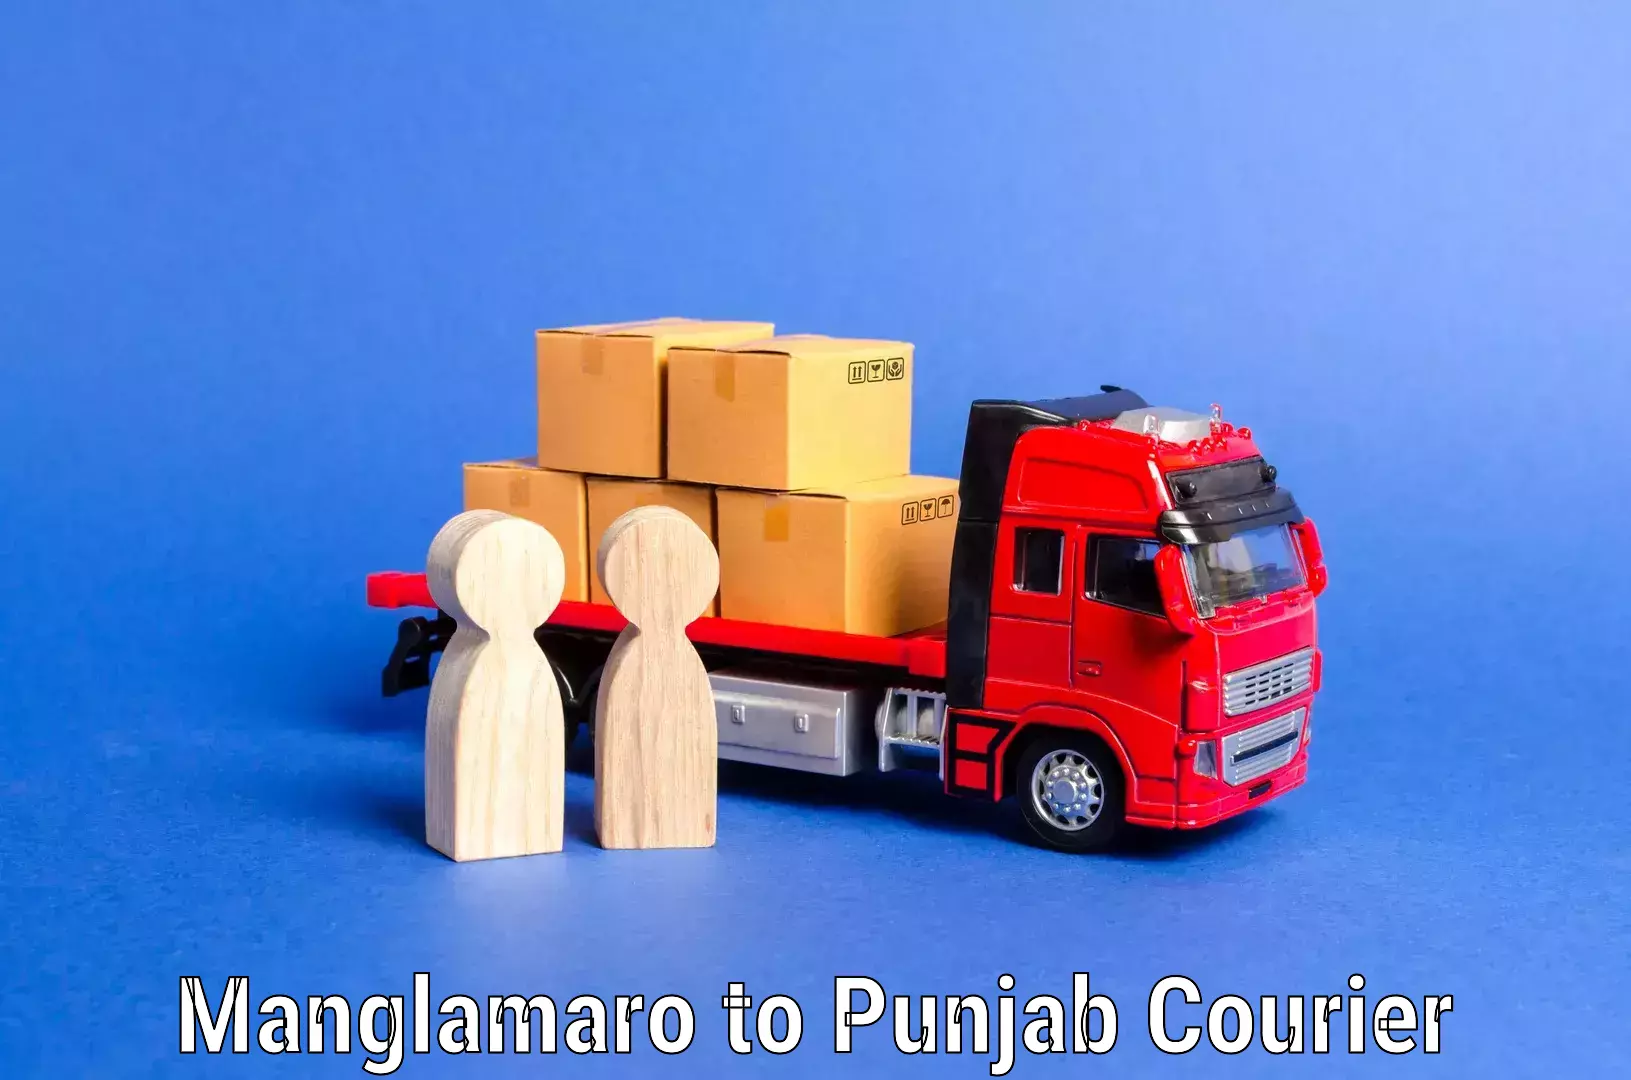 Furniture transport experts Manglamaro to Punjab